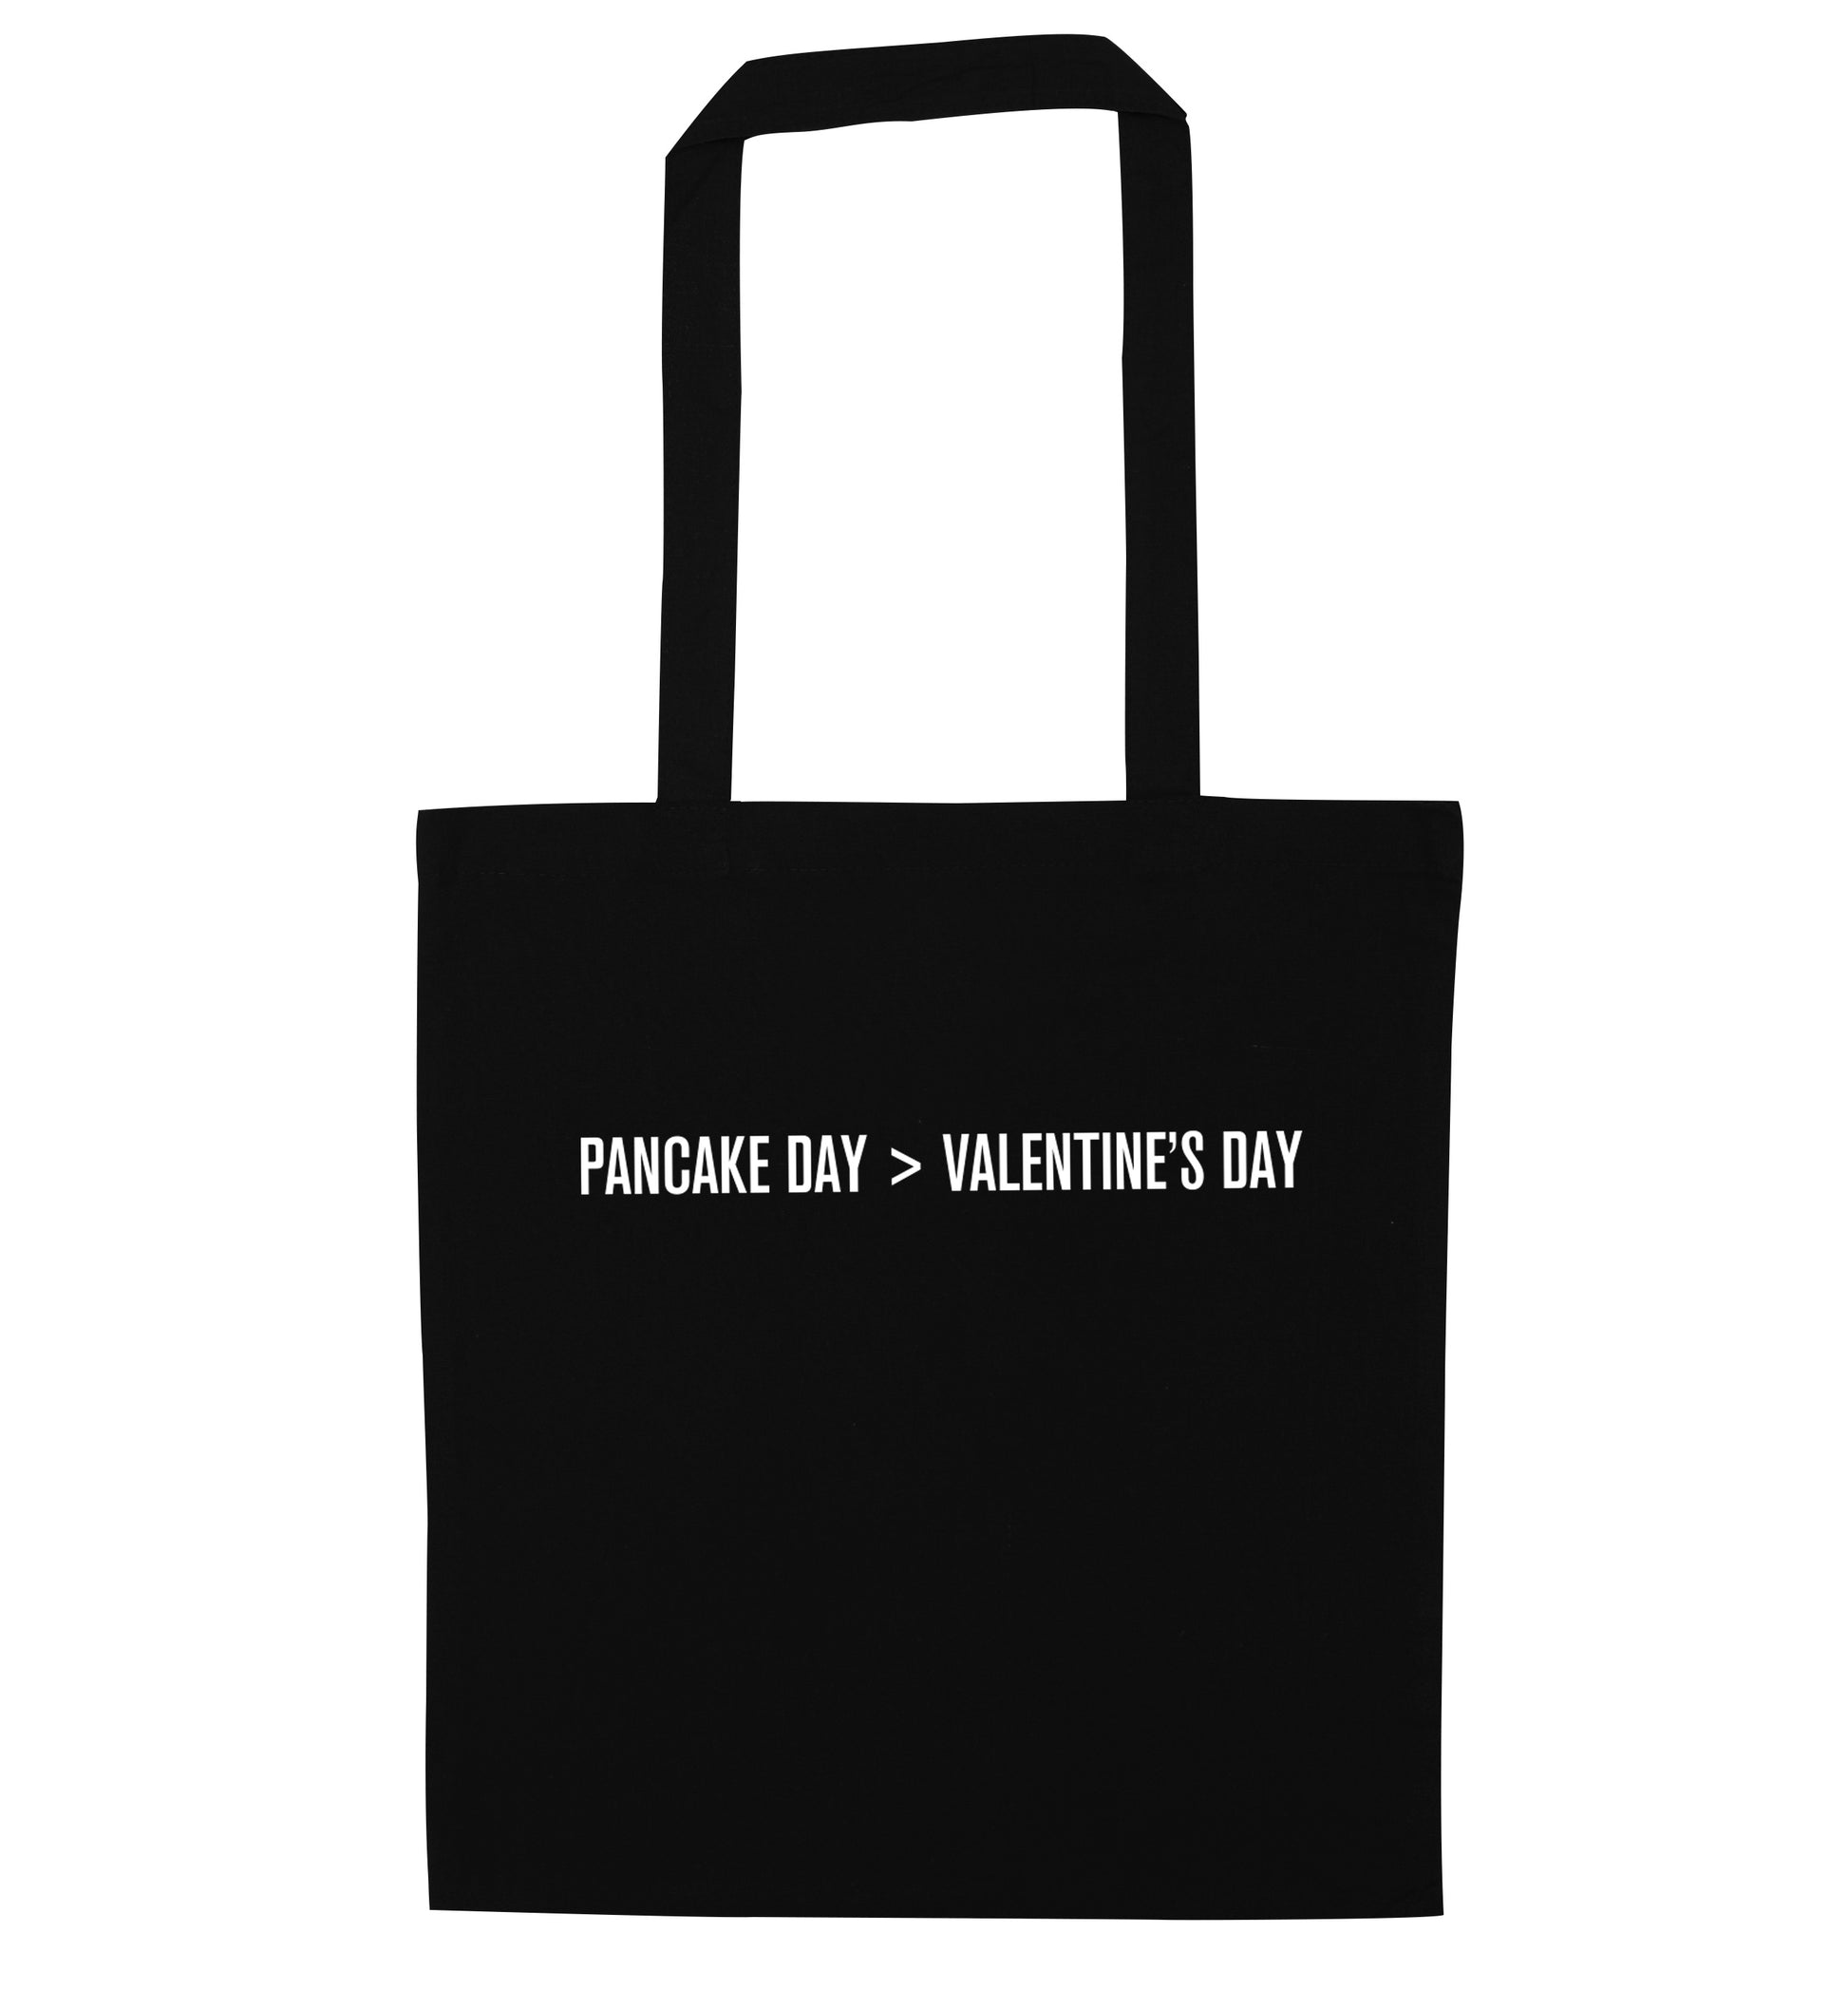 Valentine's day > pancake day black tote bag